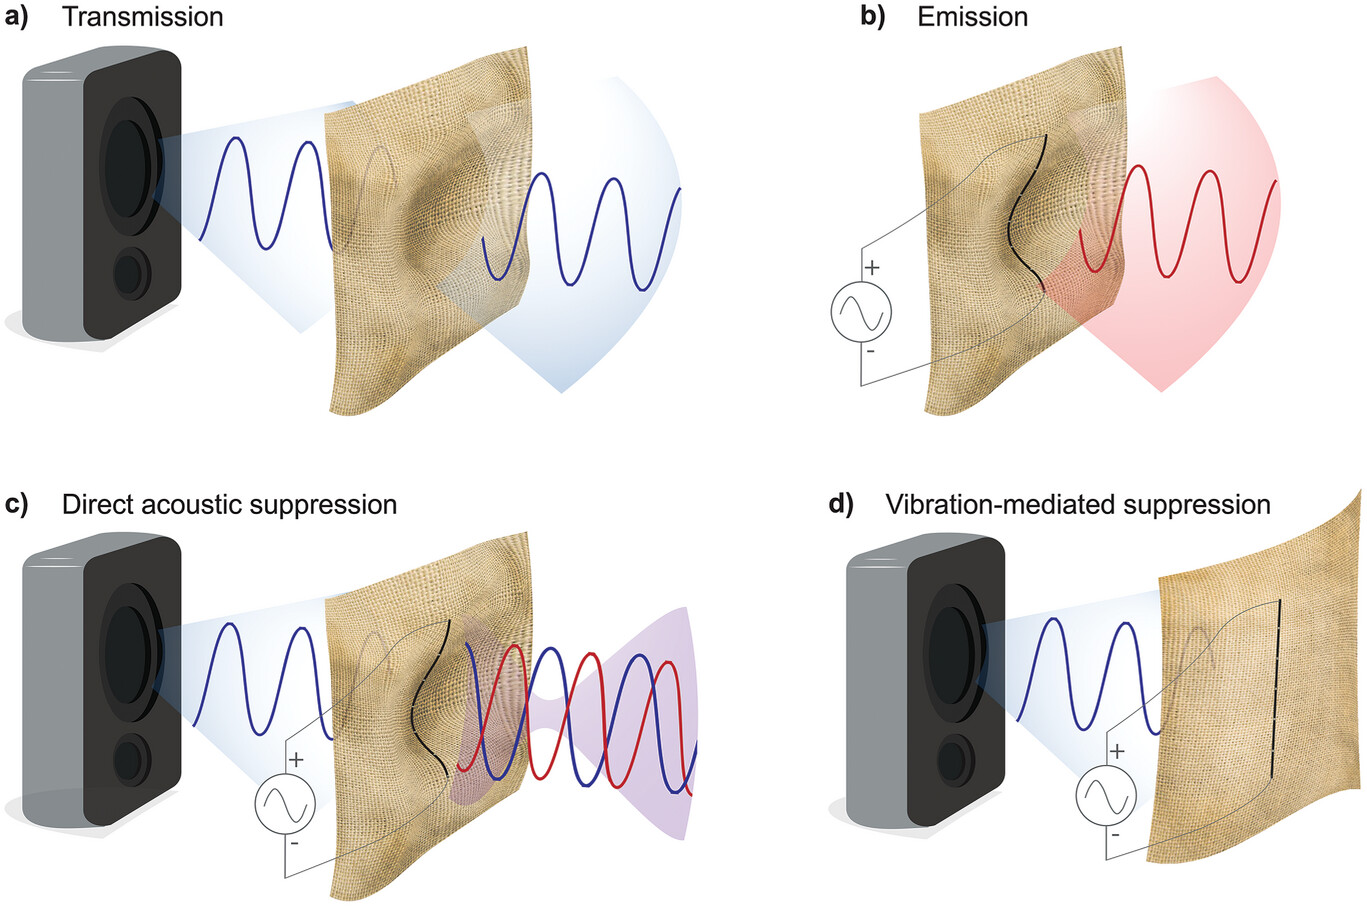 lydbølger, der giver anledning til vibrationer i forskellige stoffer